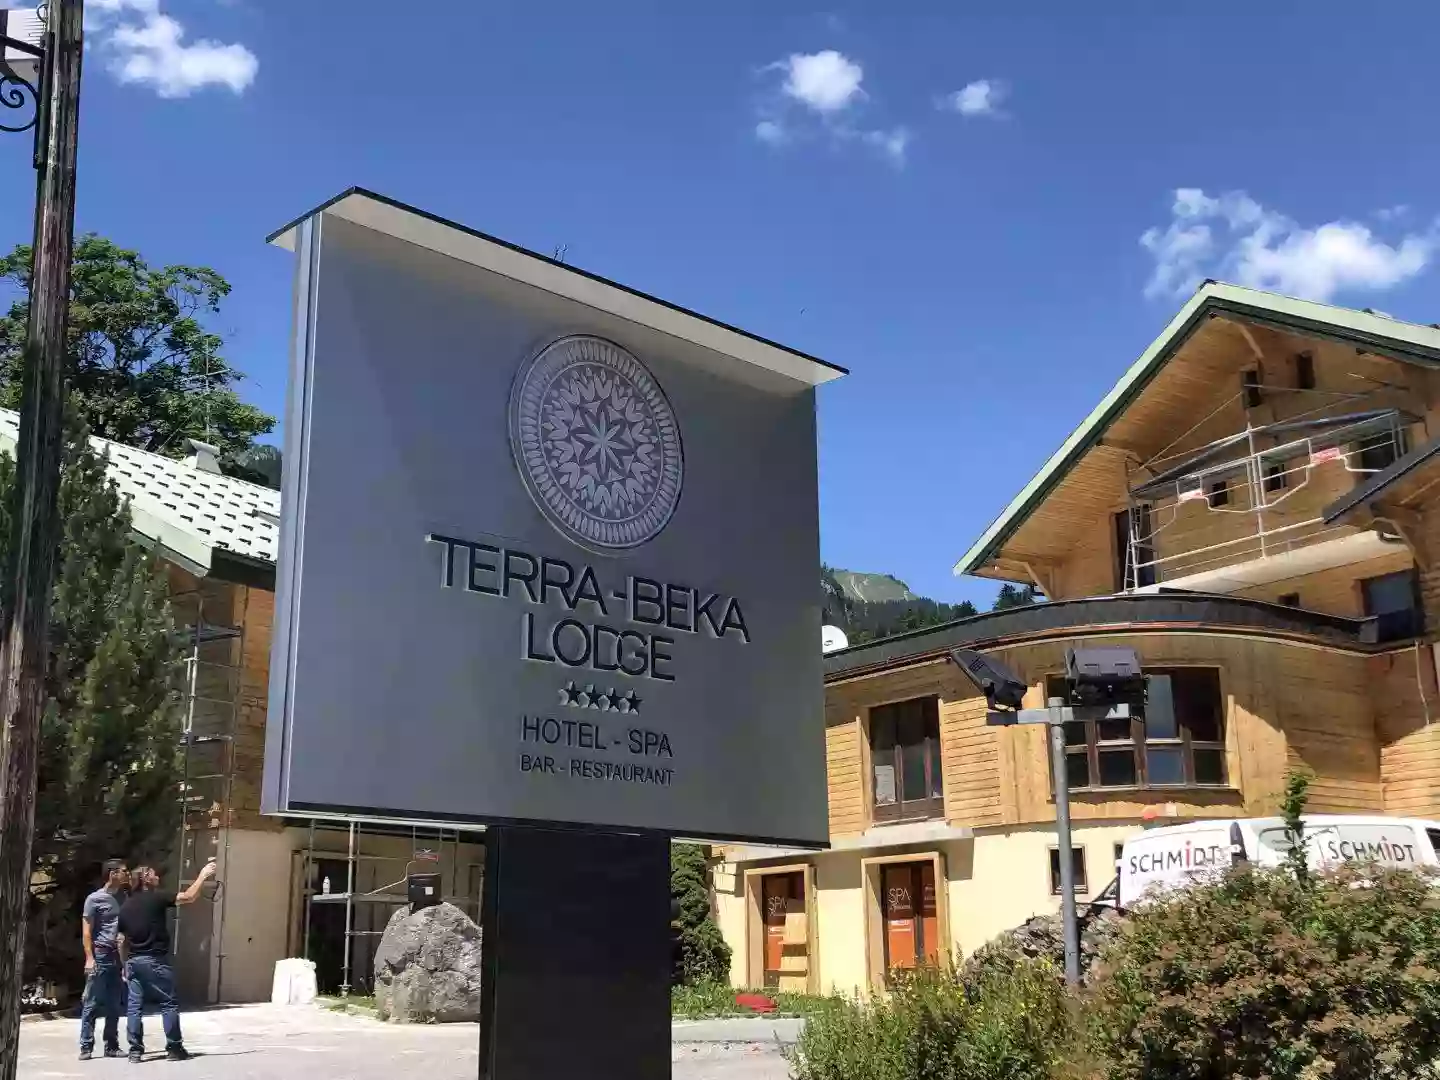 Terra-Beka Lodge